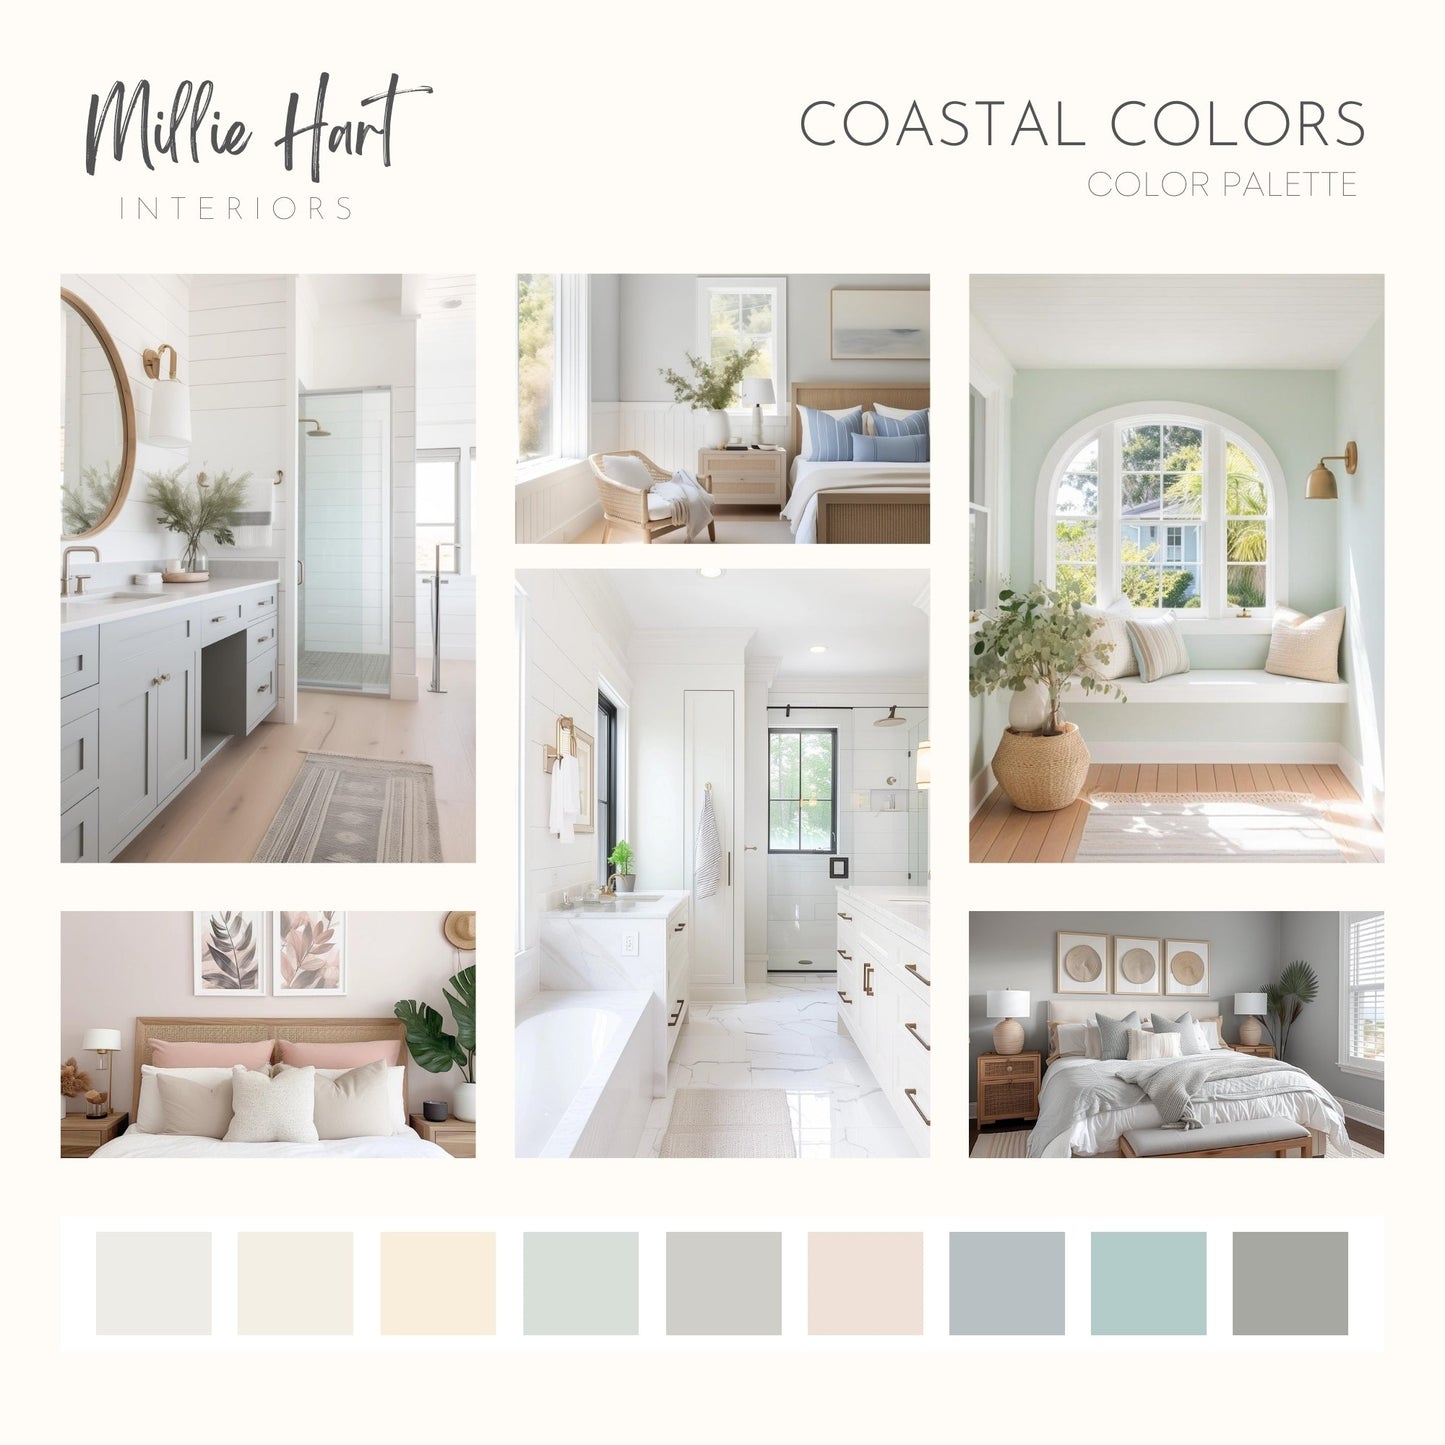 Coastal Colors Benjamin Moore Paint Palette, Interior Paint Colors for Home, Cottage Colors, Coastal Colors, Blue